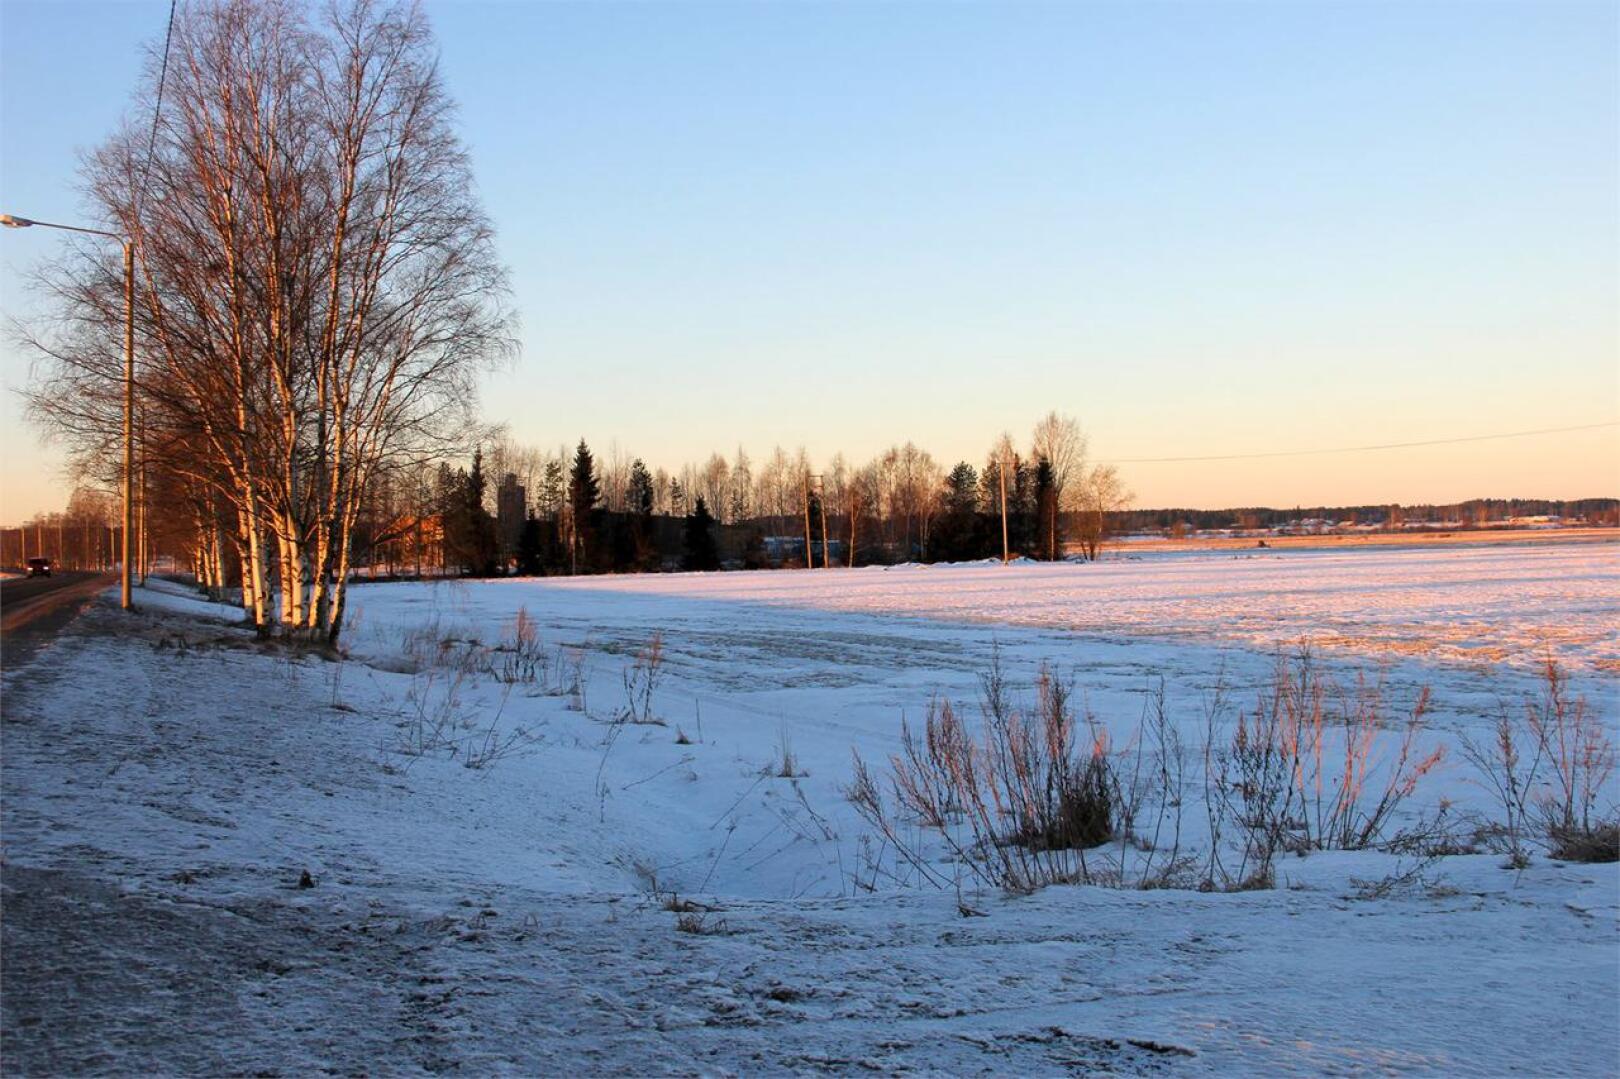 Biolaitoksen paikaksi kaavaillaan jätevesipuhdistamon vieressä olevaa tonttia Kokkola-Kajaani -tien varrella.